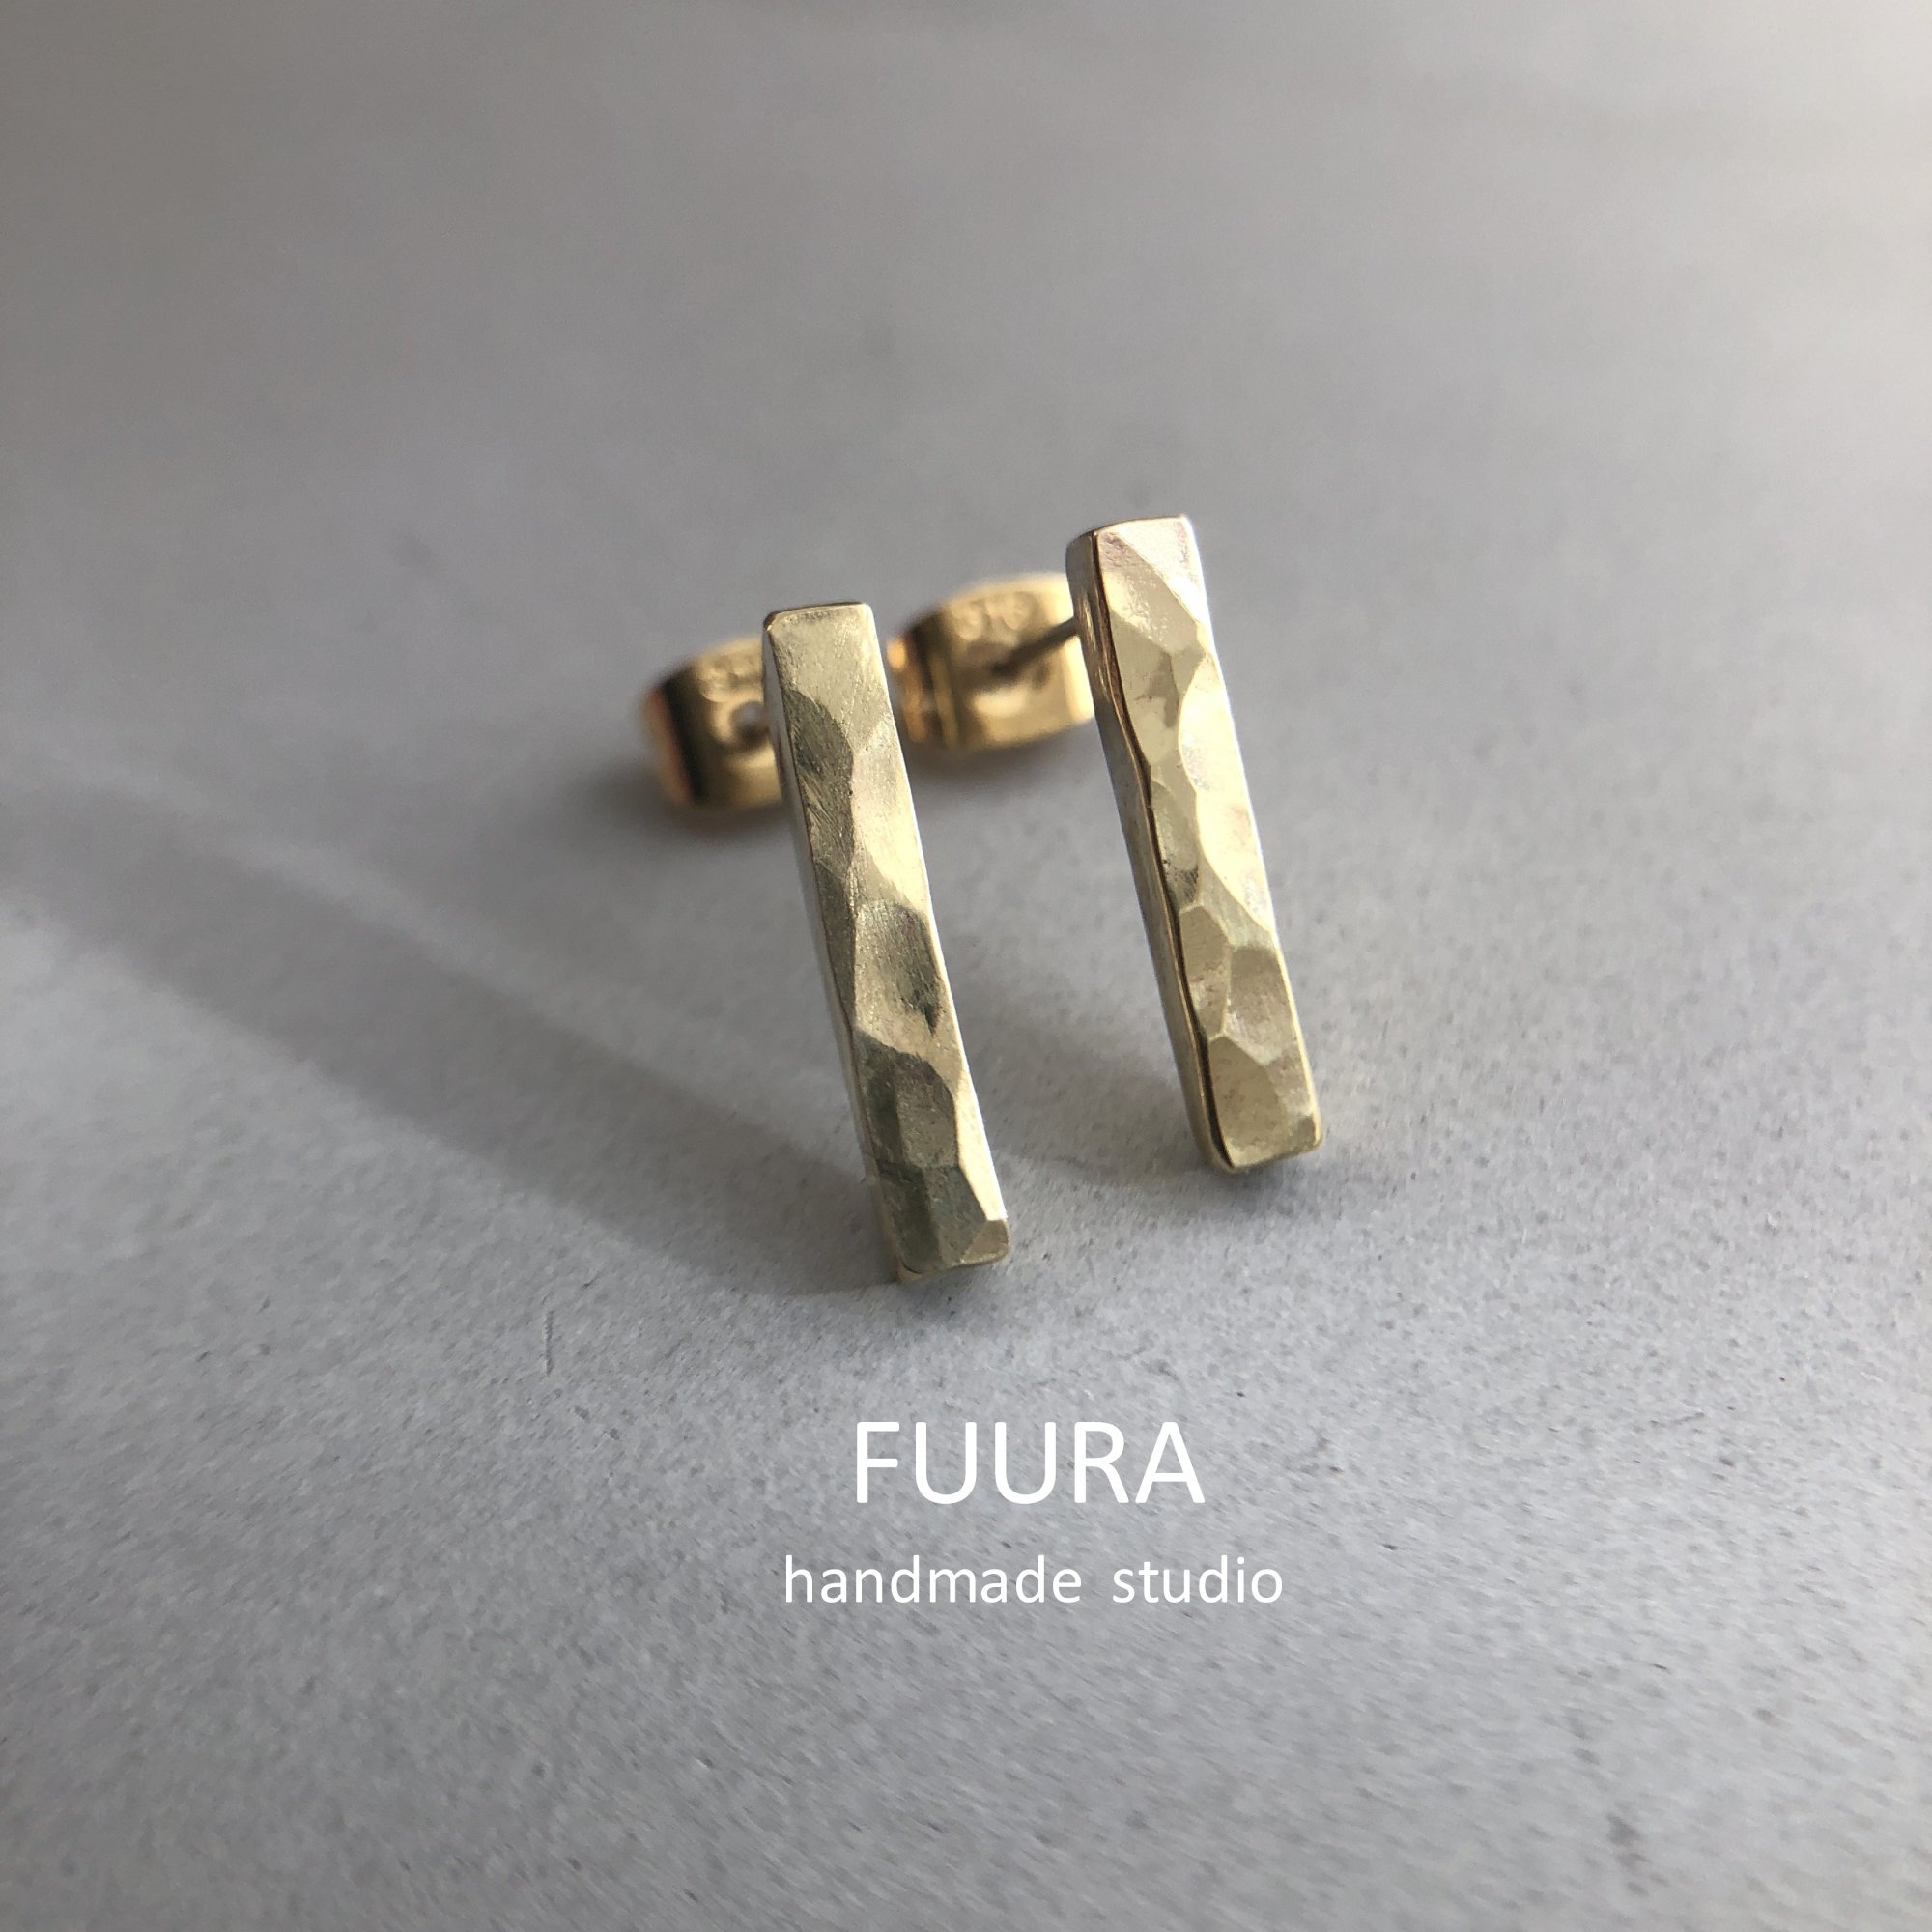 brass pierce koeda mini / 真鍮ピアス 小枝 ミニ - FUURA handmade studio